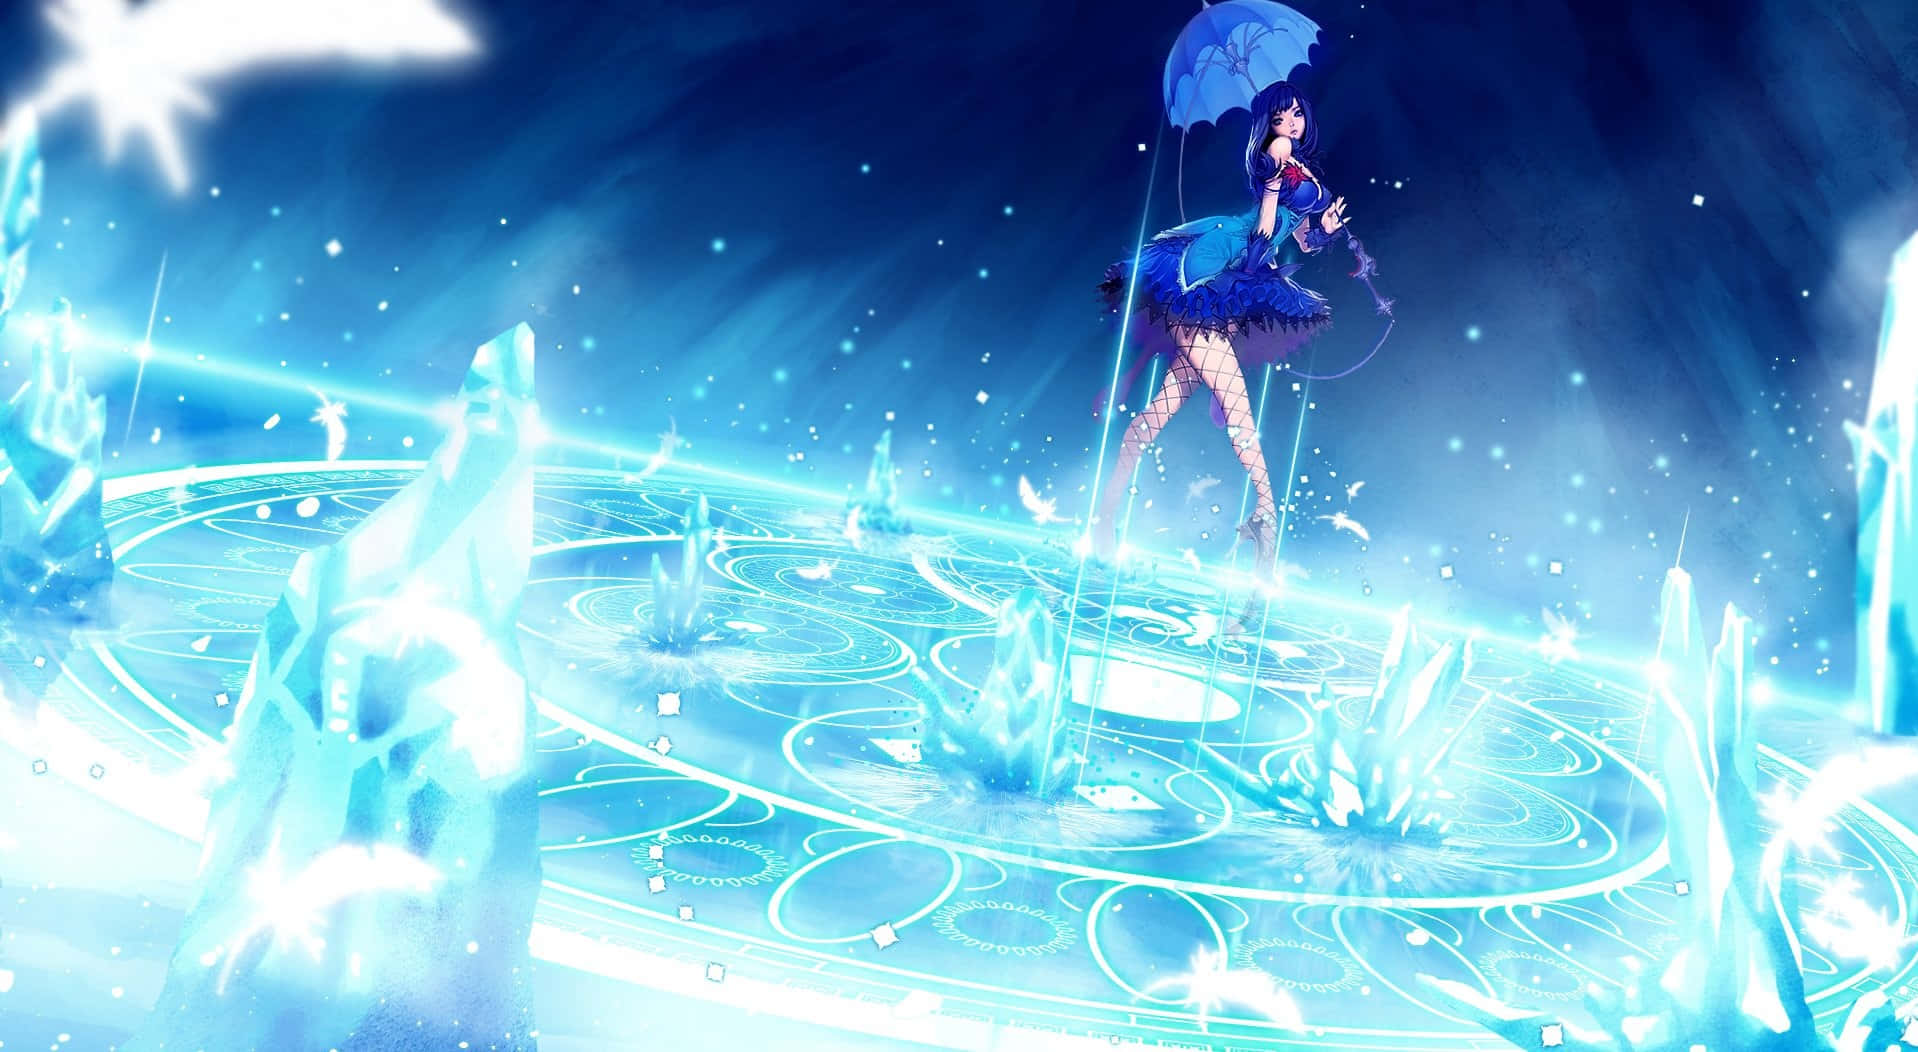 Blue Anime Girl With An Umbrella Wallpaper